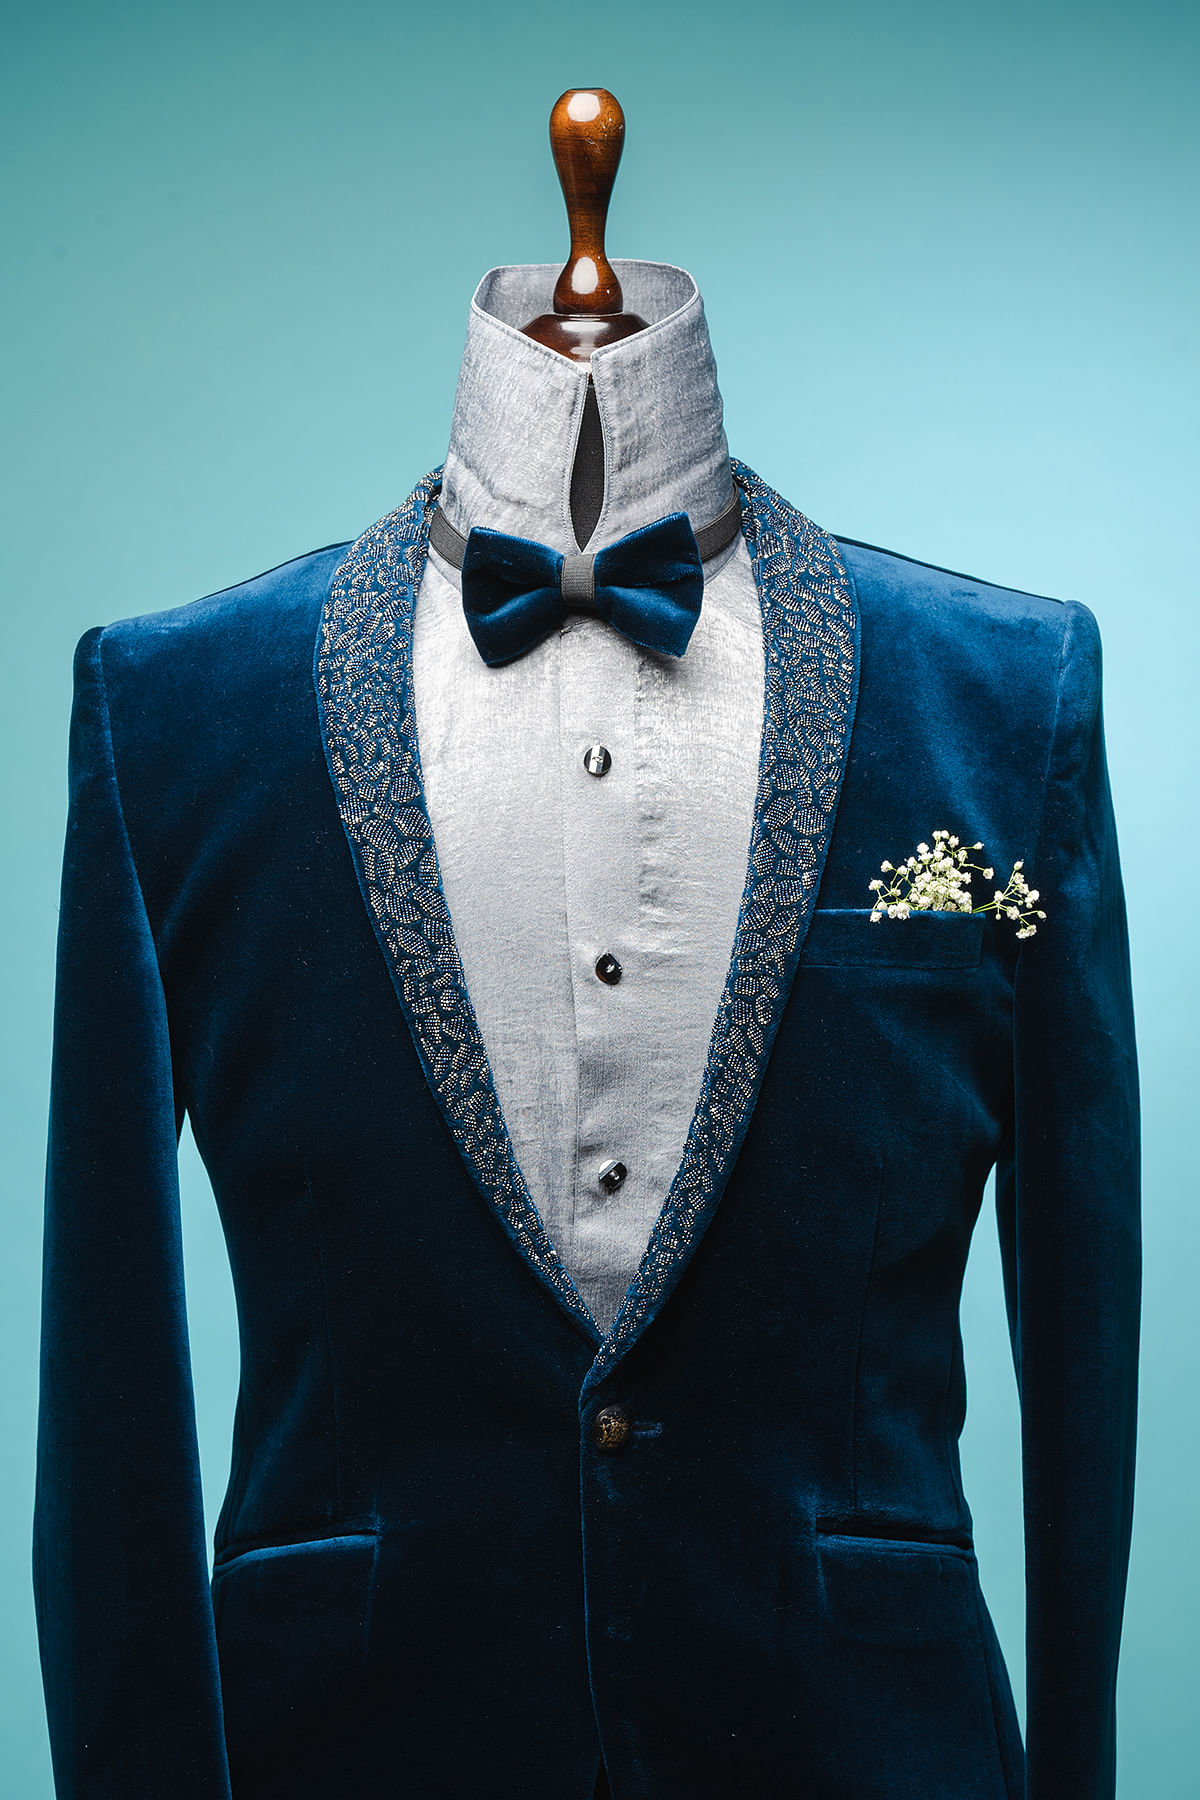 The Regal Blue Suit